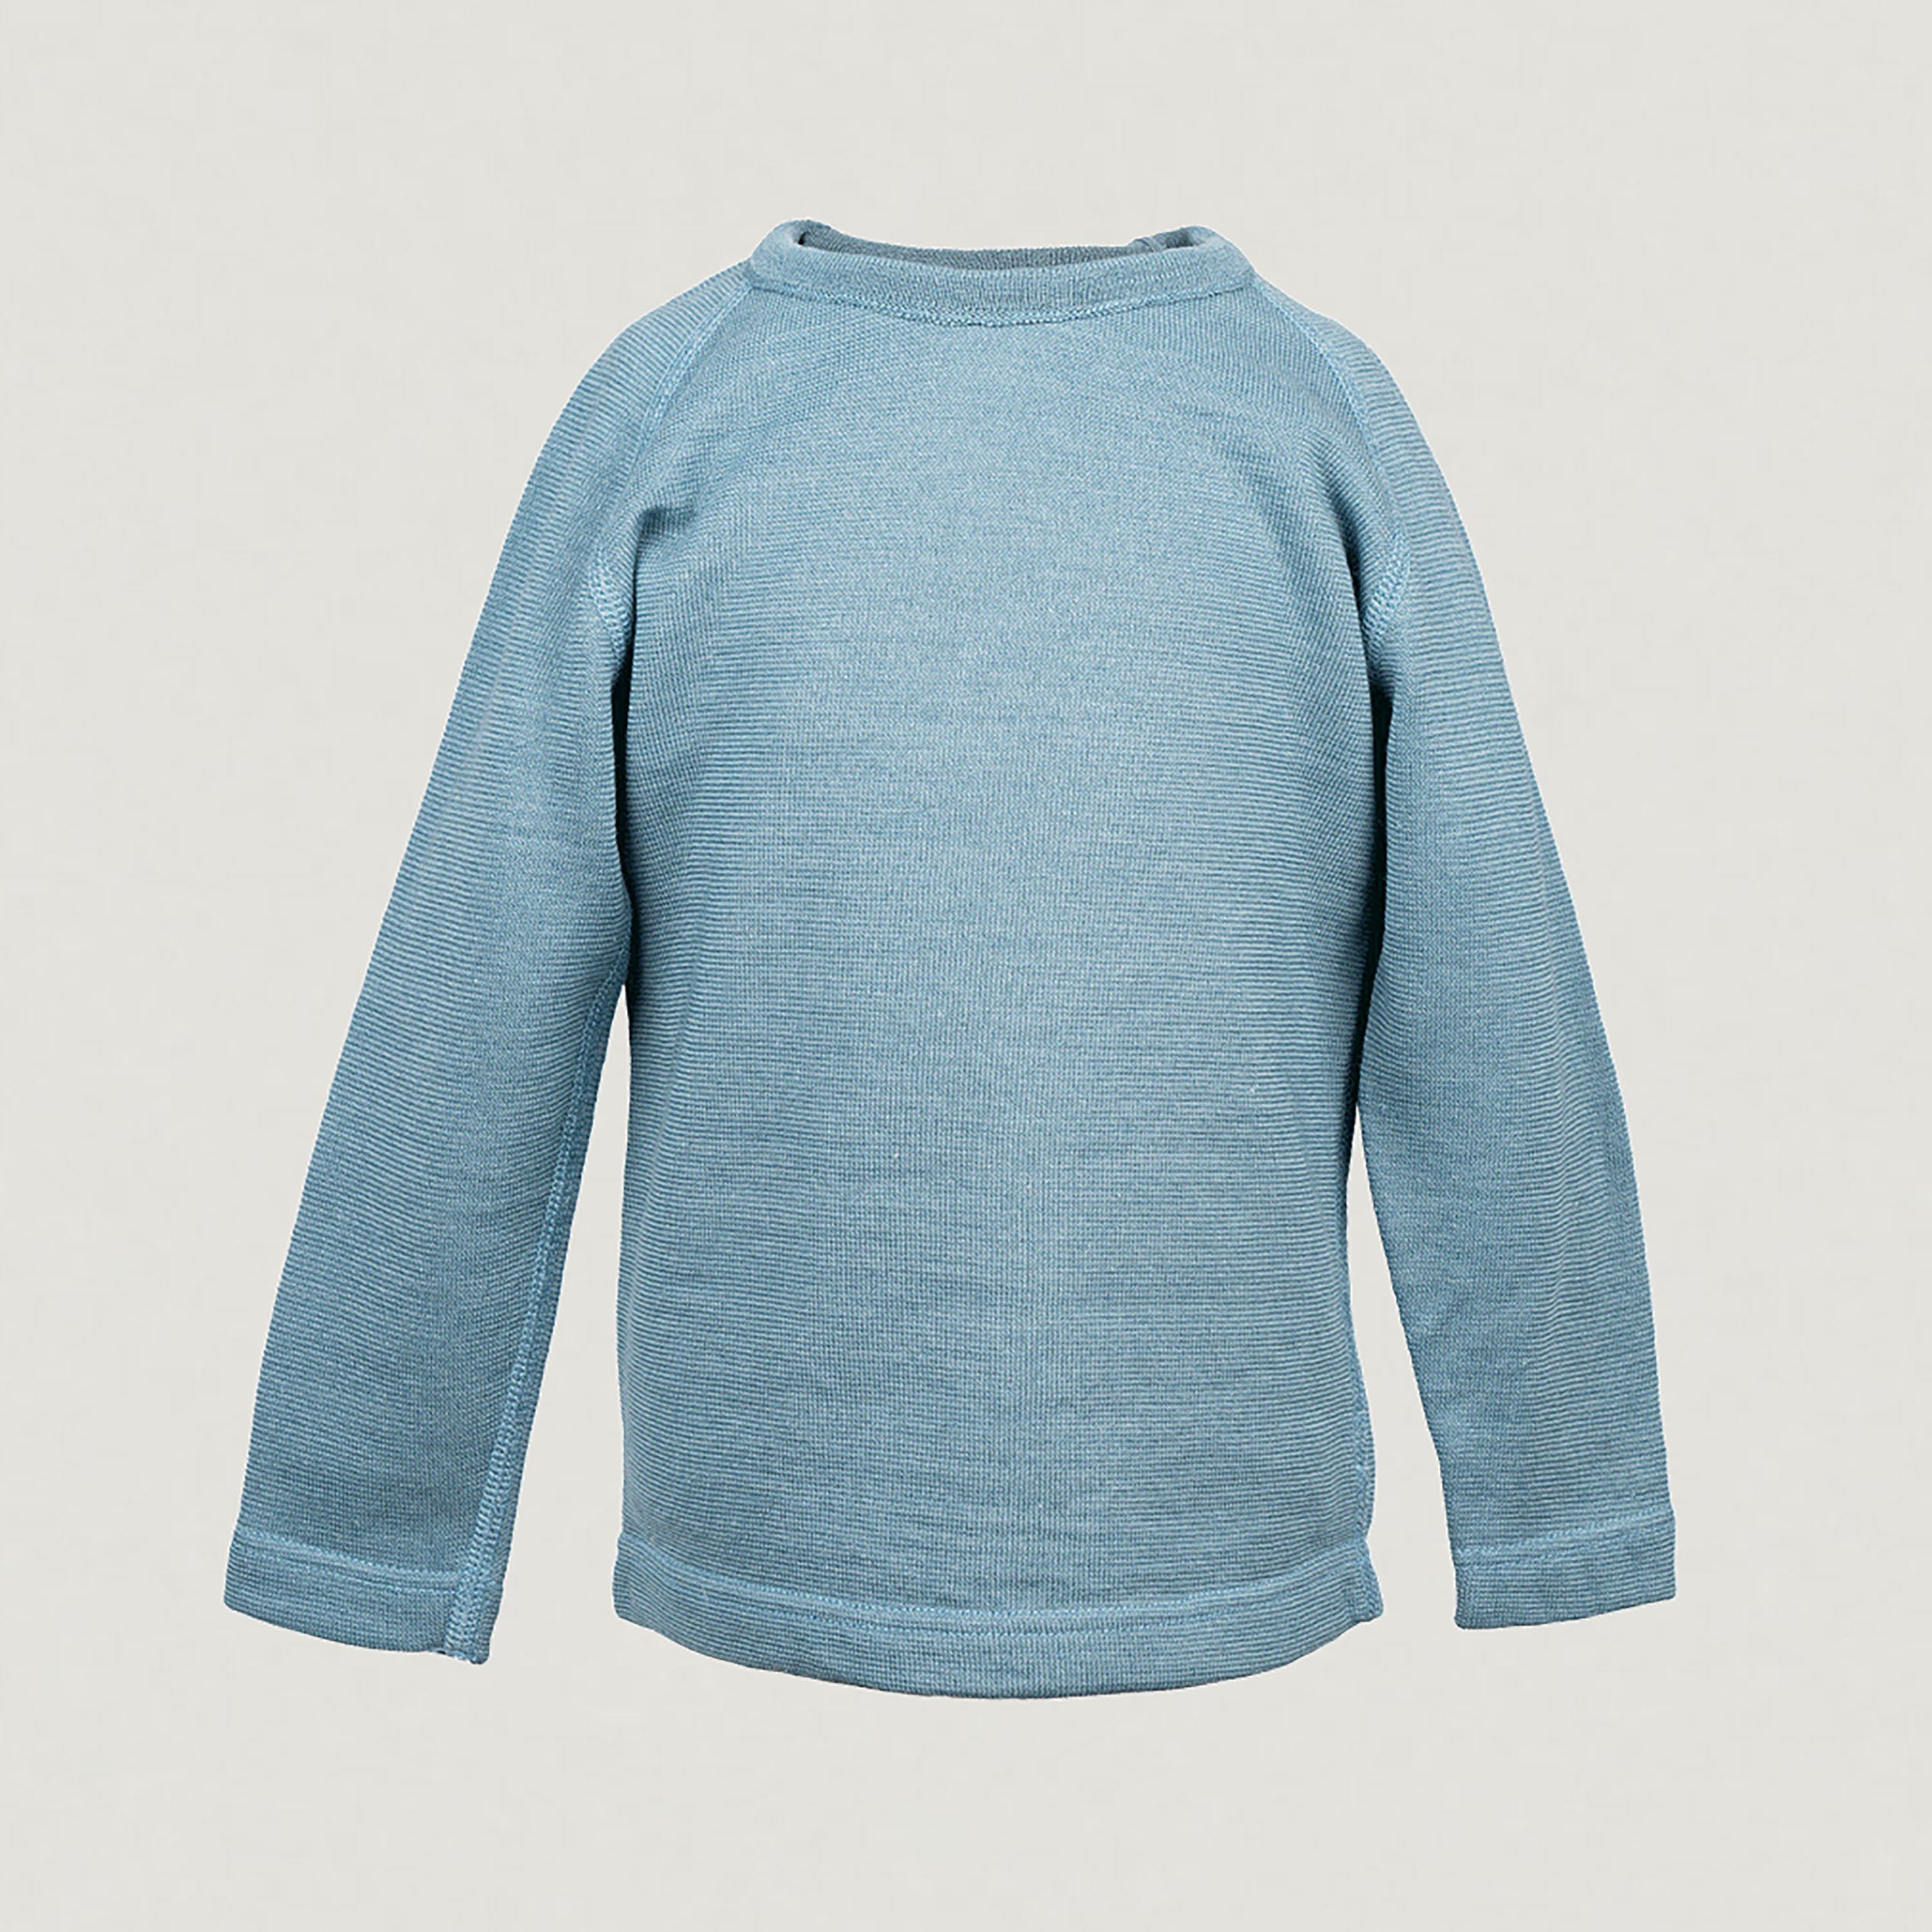 Produktfoto vom langarm Shirt aus Wolle & Seide von Reiff in der Farbe Aqua